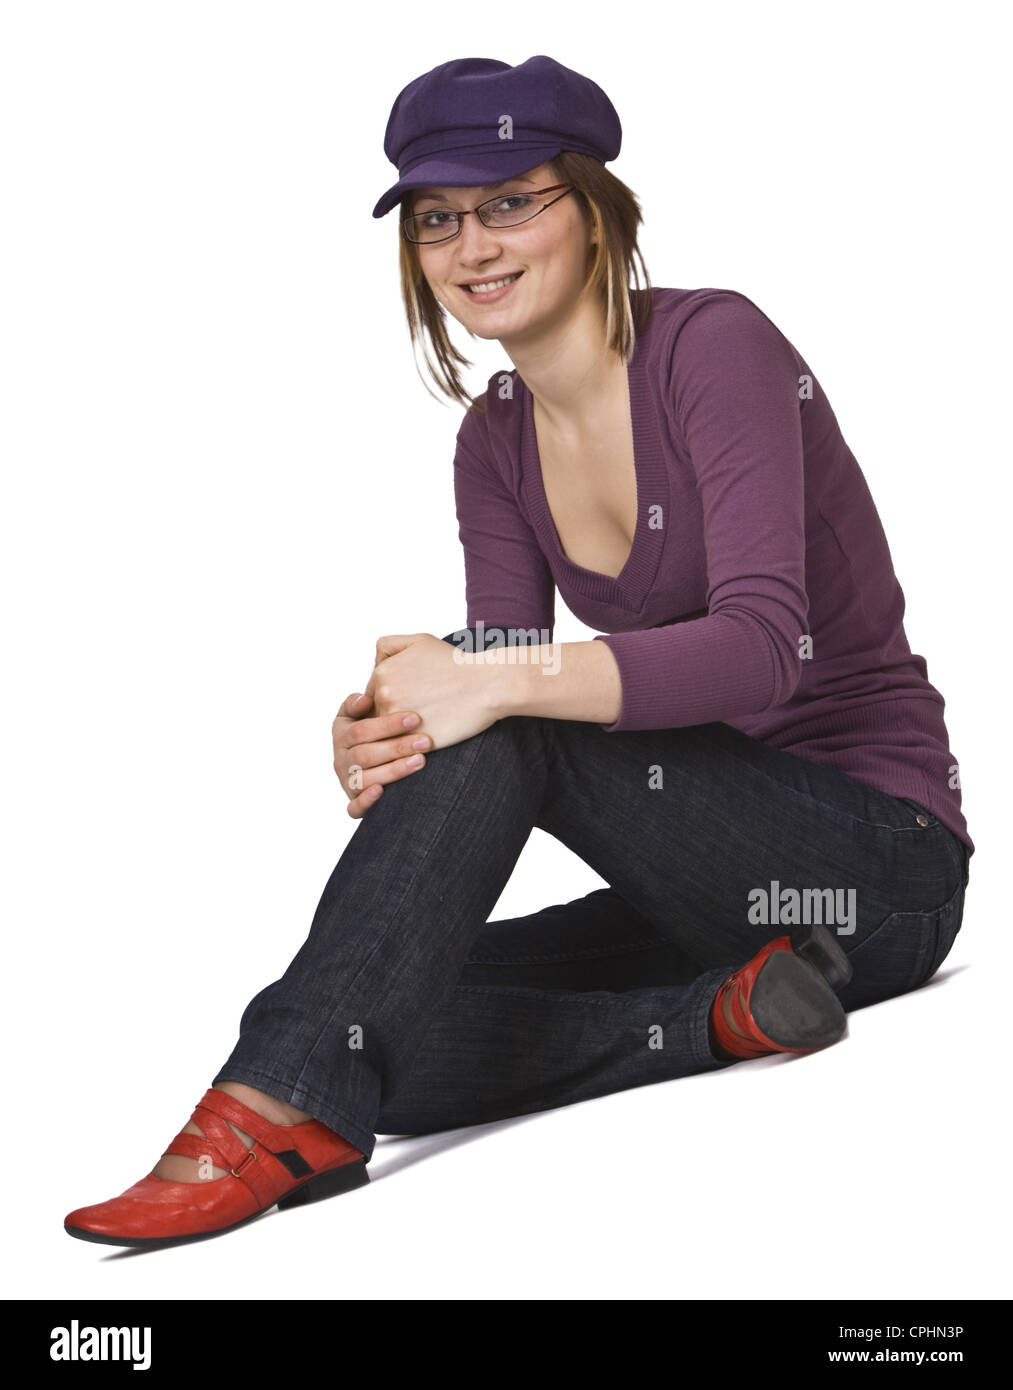 Junge Frau mit violetten Hut und Brille Standortwahl isoliert auf einem weißen Hintergrund. Stockfoto